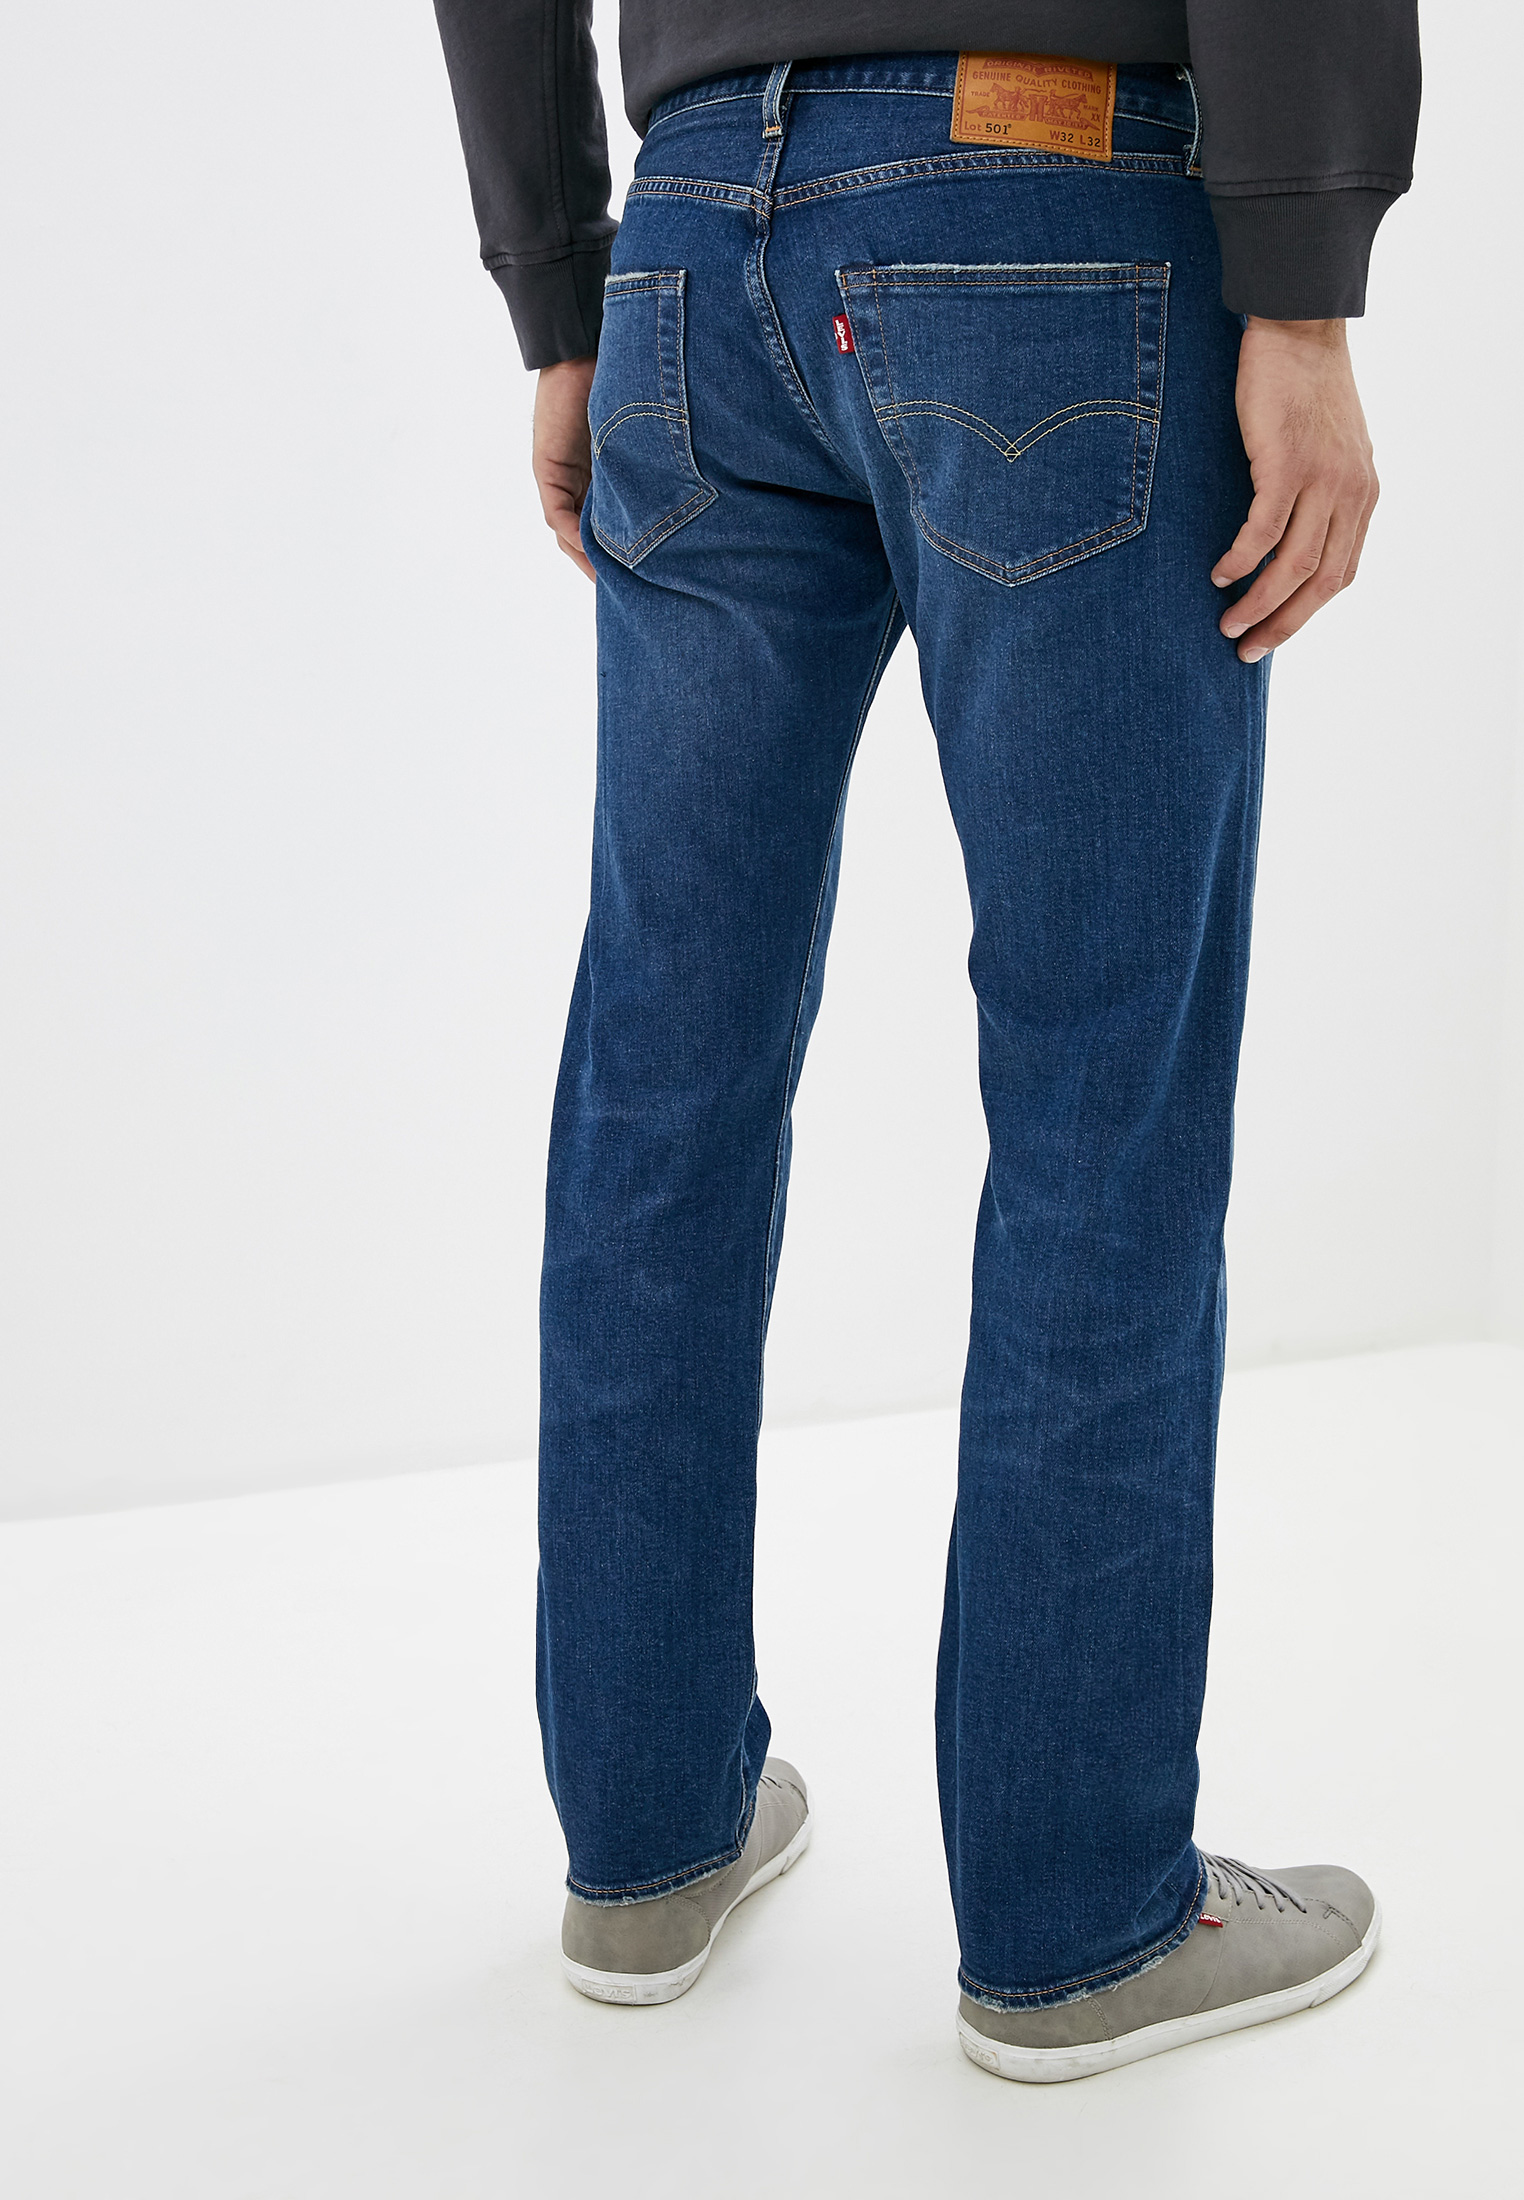 Левис джинсовая мужская. Джинсы левайс мужские 501 классические. Левайс 501 вельветовые джинсы. Синие джинсы левайс мужские. Левайс 501 мужские темно синие.